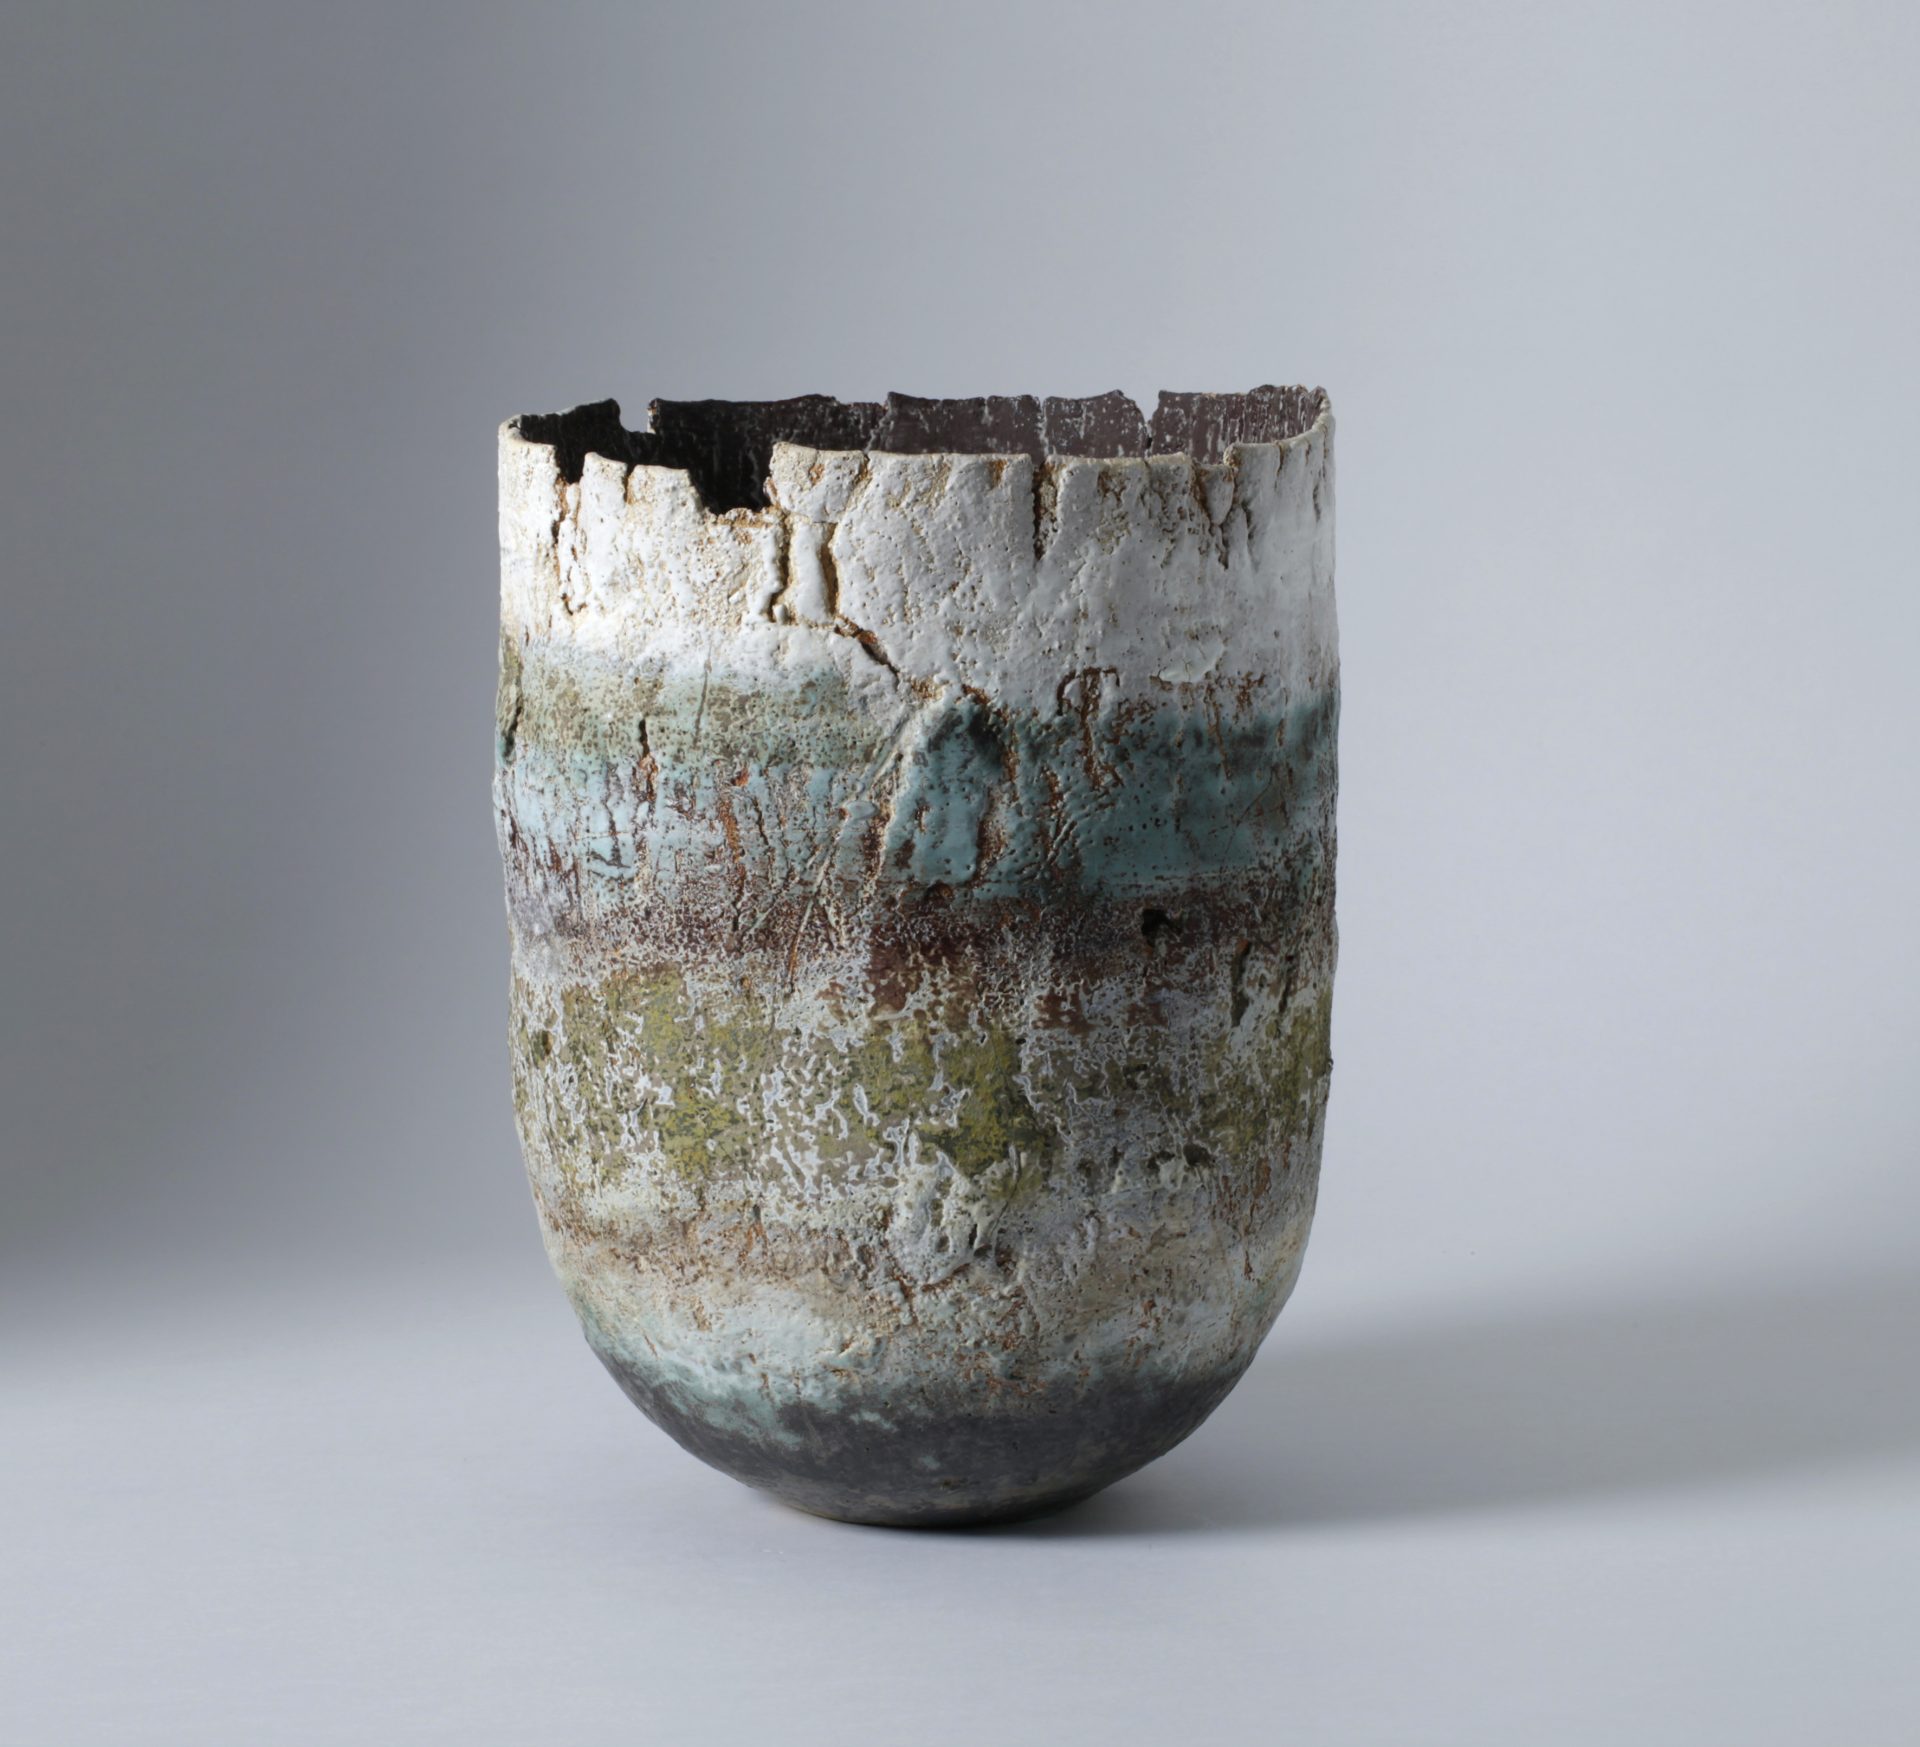 Hohes, zylindrisches Gefäß mit partiell aufgebrochenem Rand aus Steinzeug, von Rachel Wood, 2015.